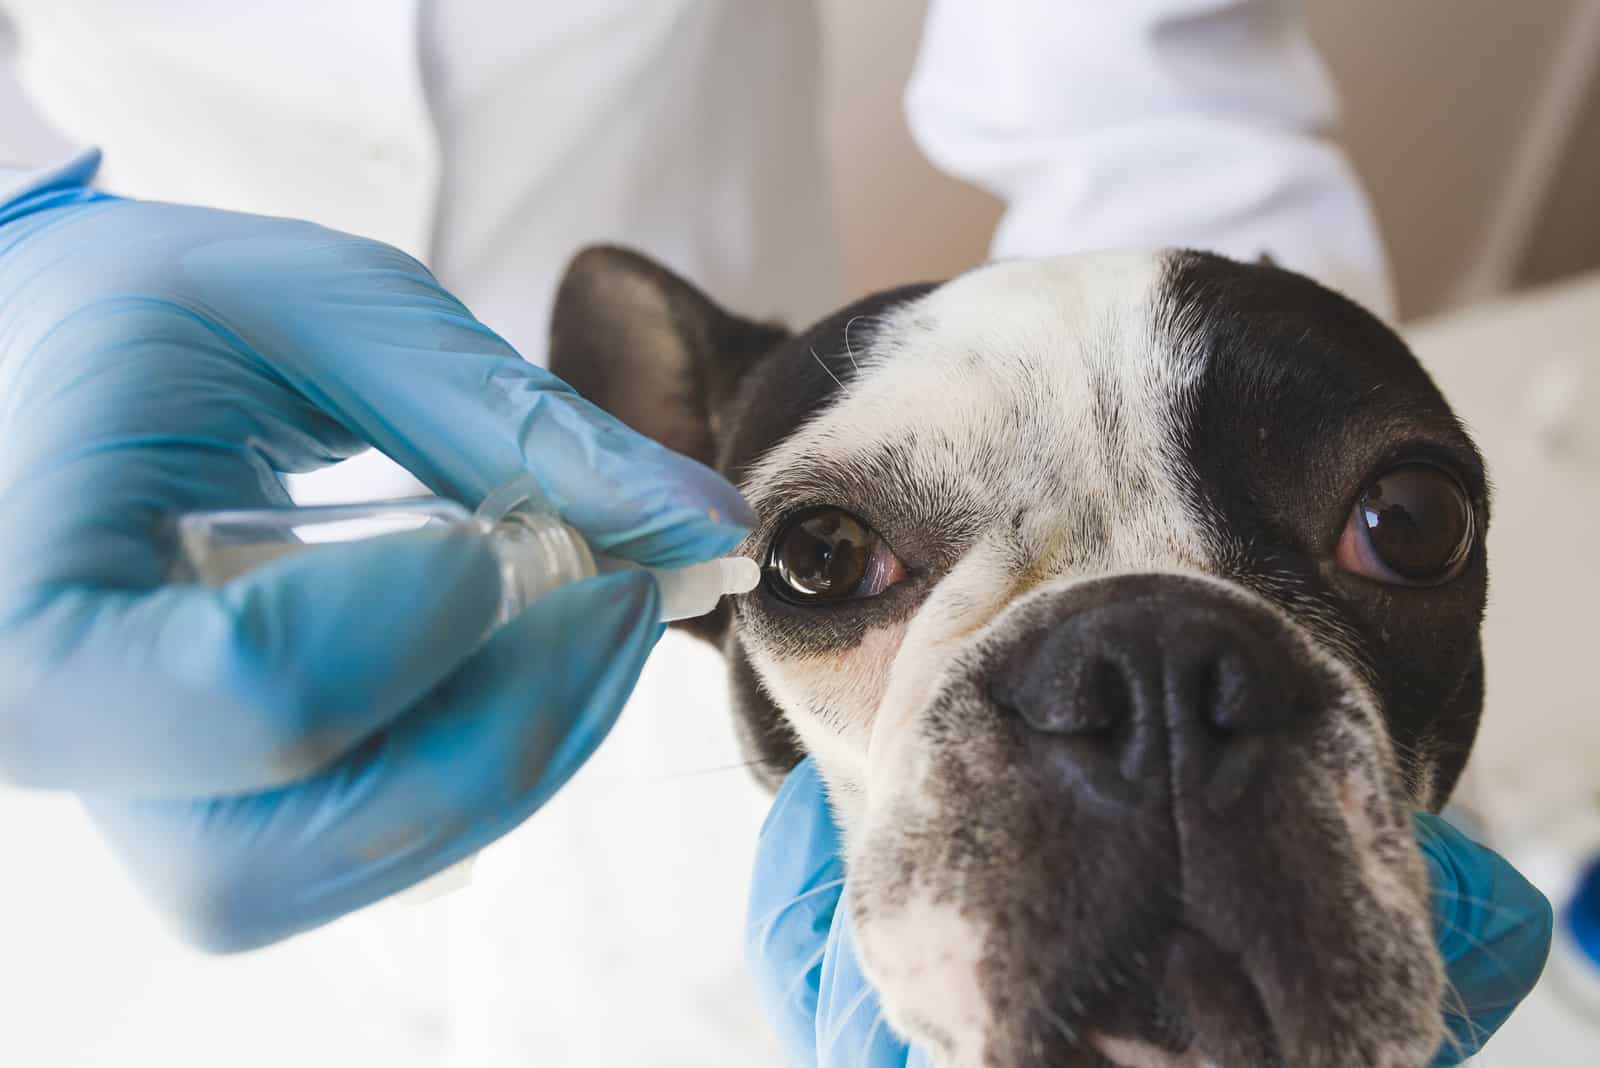 Tierarzt behandelt Auge des kranken Hundes